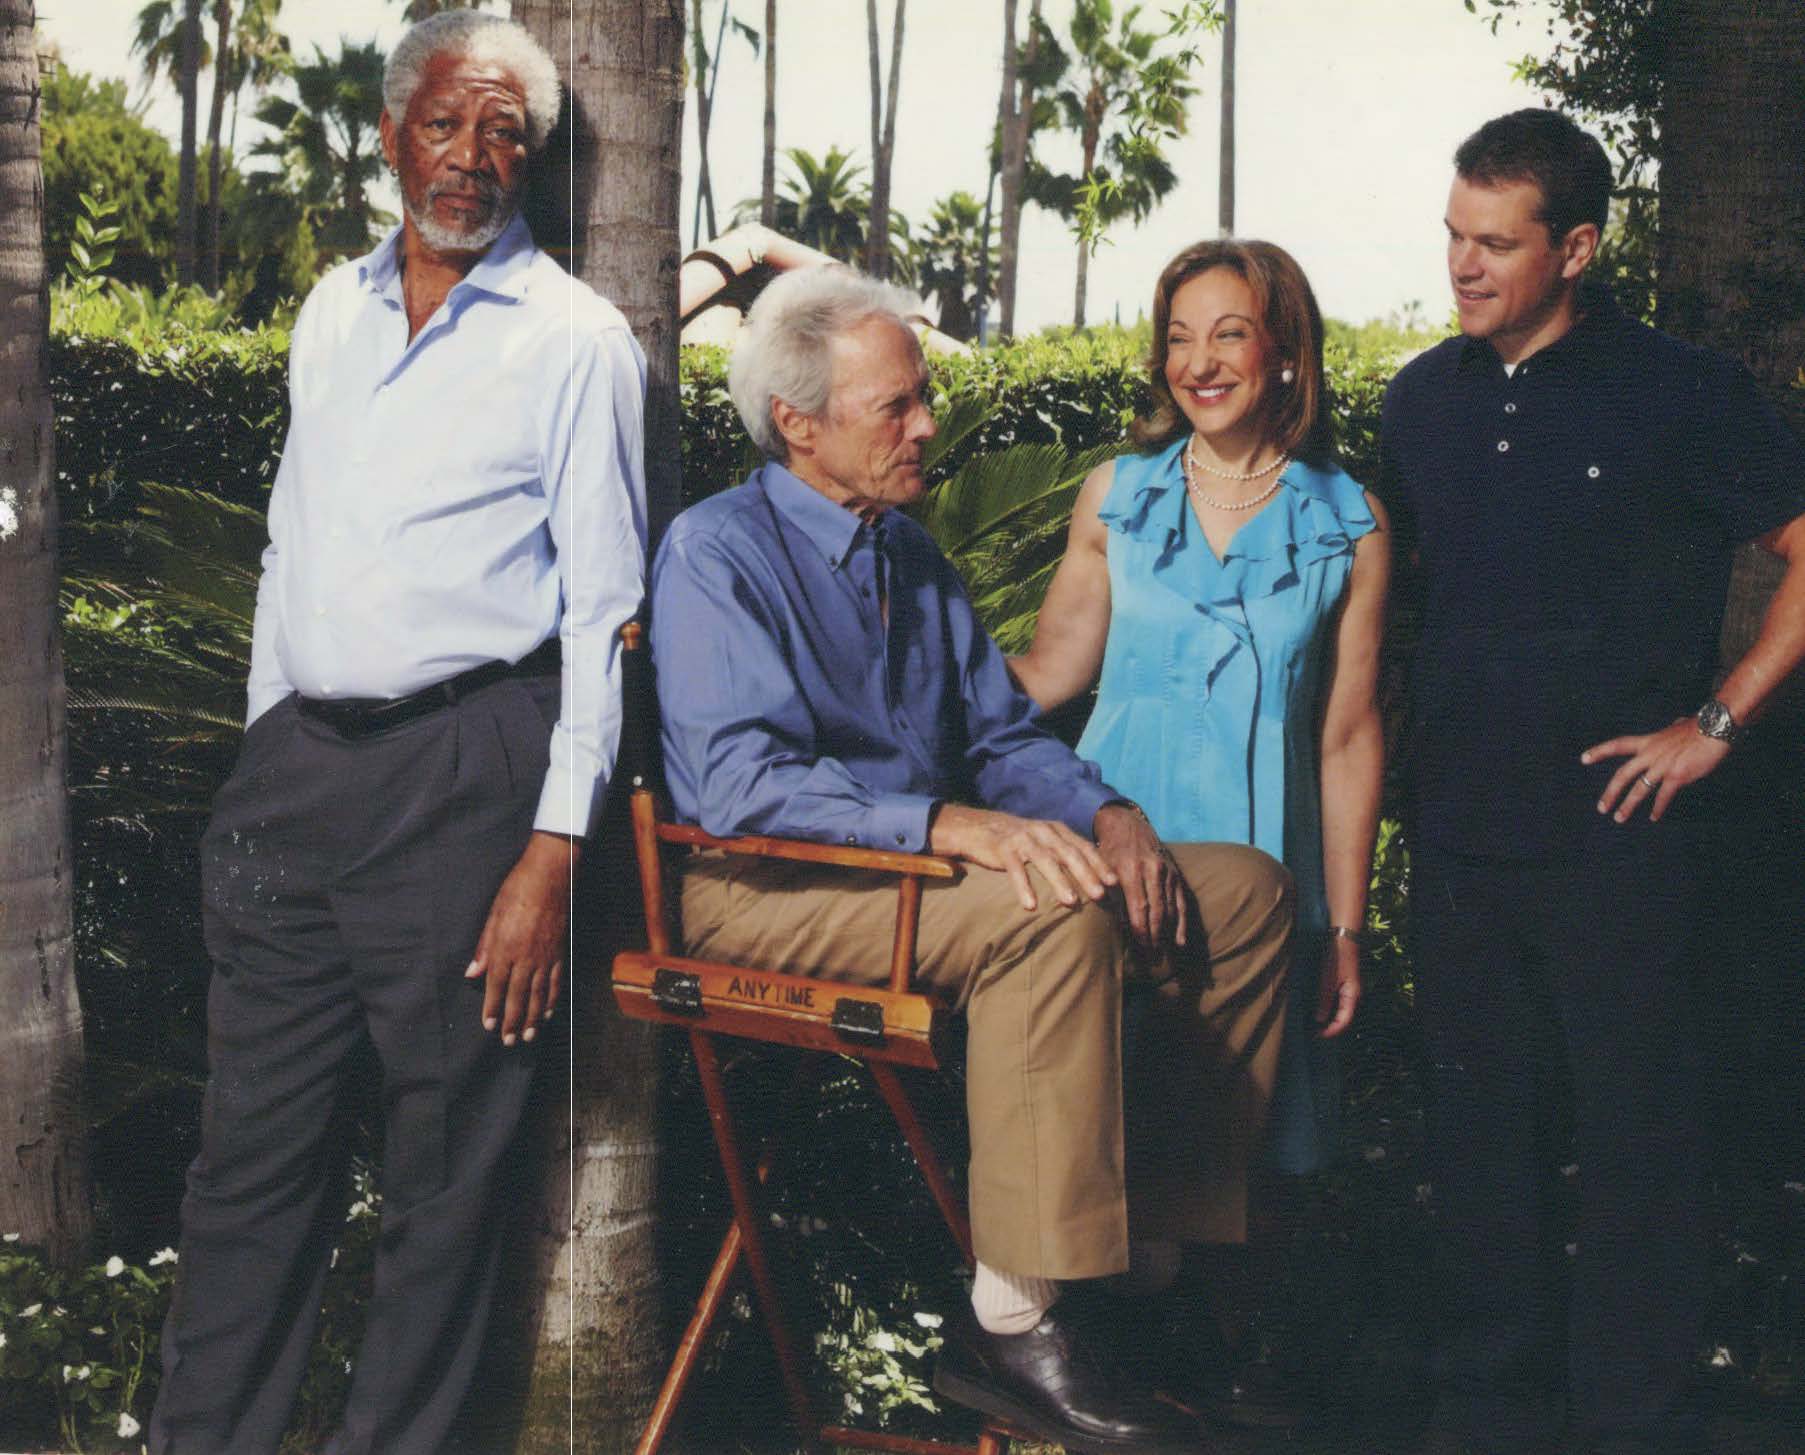 An afternoon interviewing Morgan Freeman, Clint Eastwood, and Matt Damon